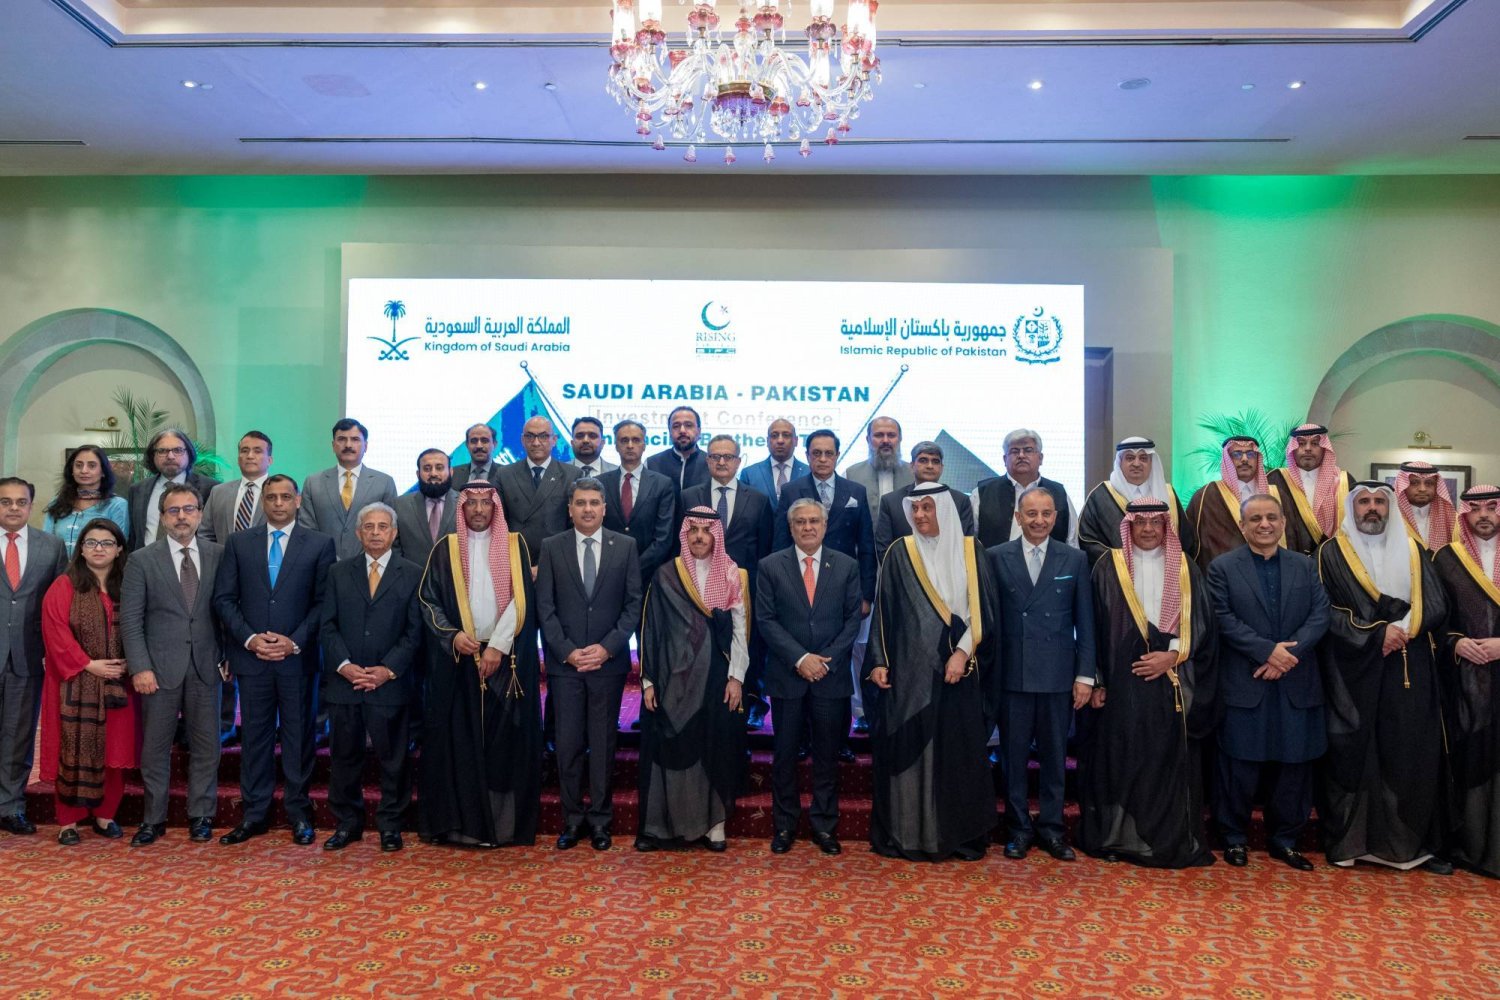 وزيرا خارجية السعودية وباكستان في صورة جماعية عقب اجتماع مجلس تيسير الاستثمار الخاص بين البلدين (واس)